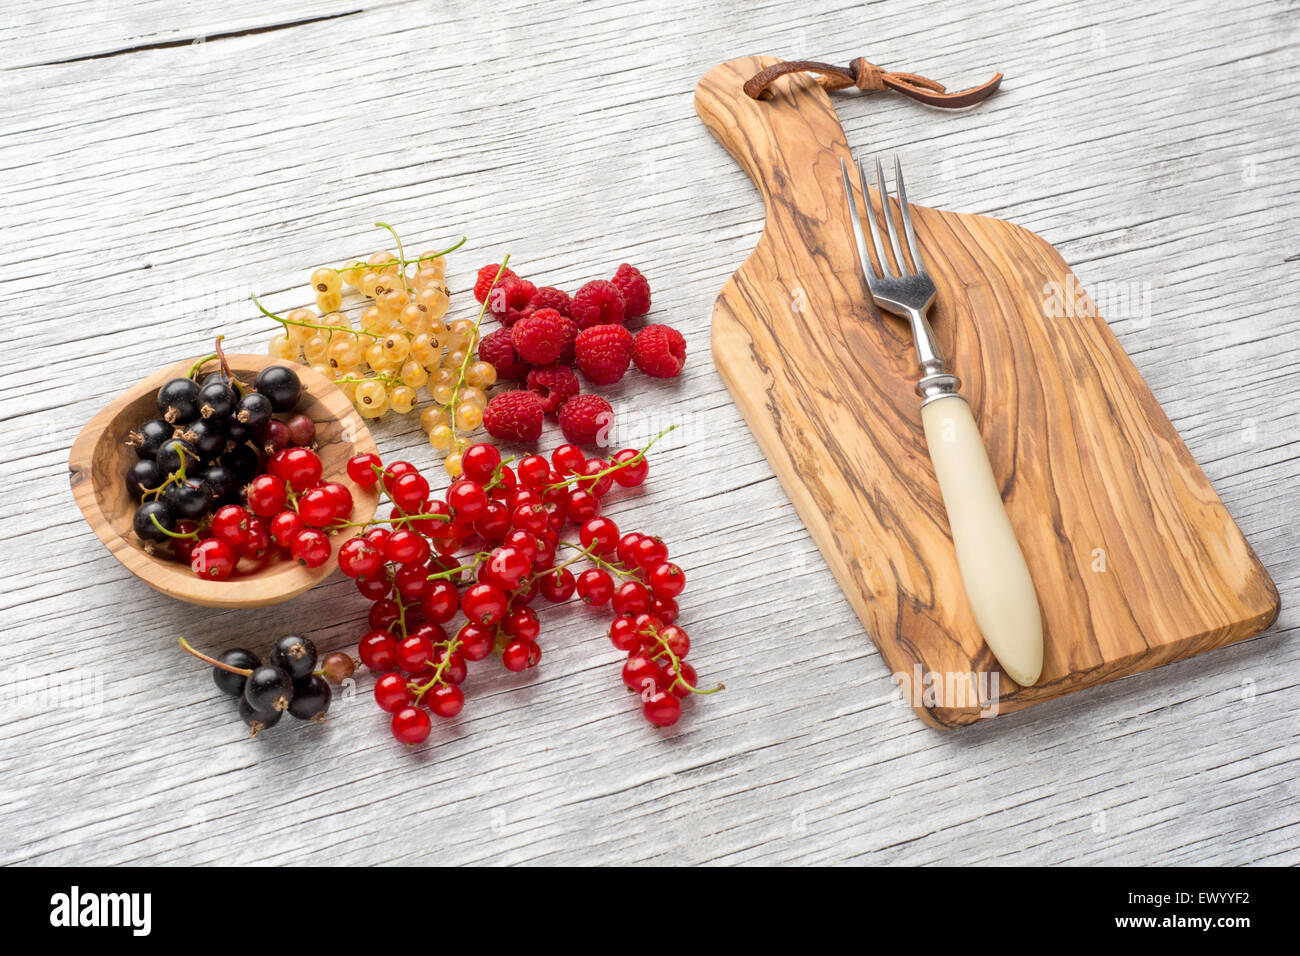 L'été savoureux fruits sur une table en bois. les framboises, mûre, de cassis Banque D'Images